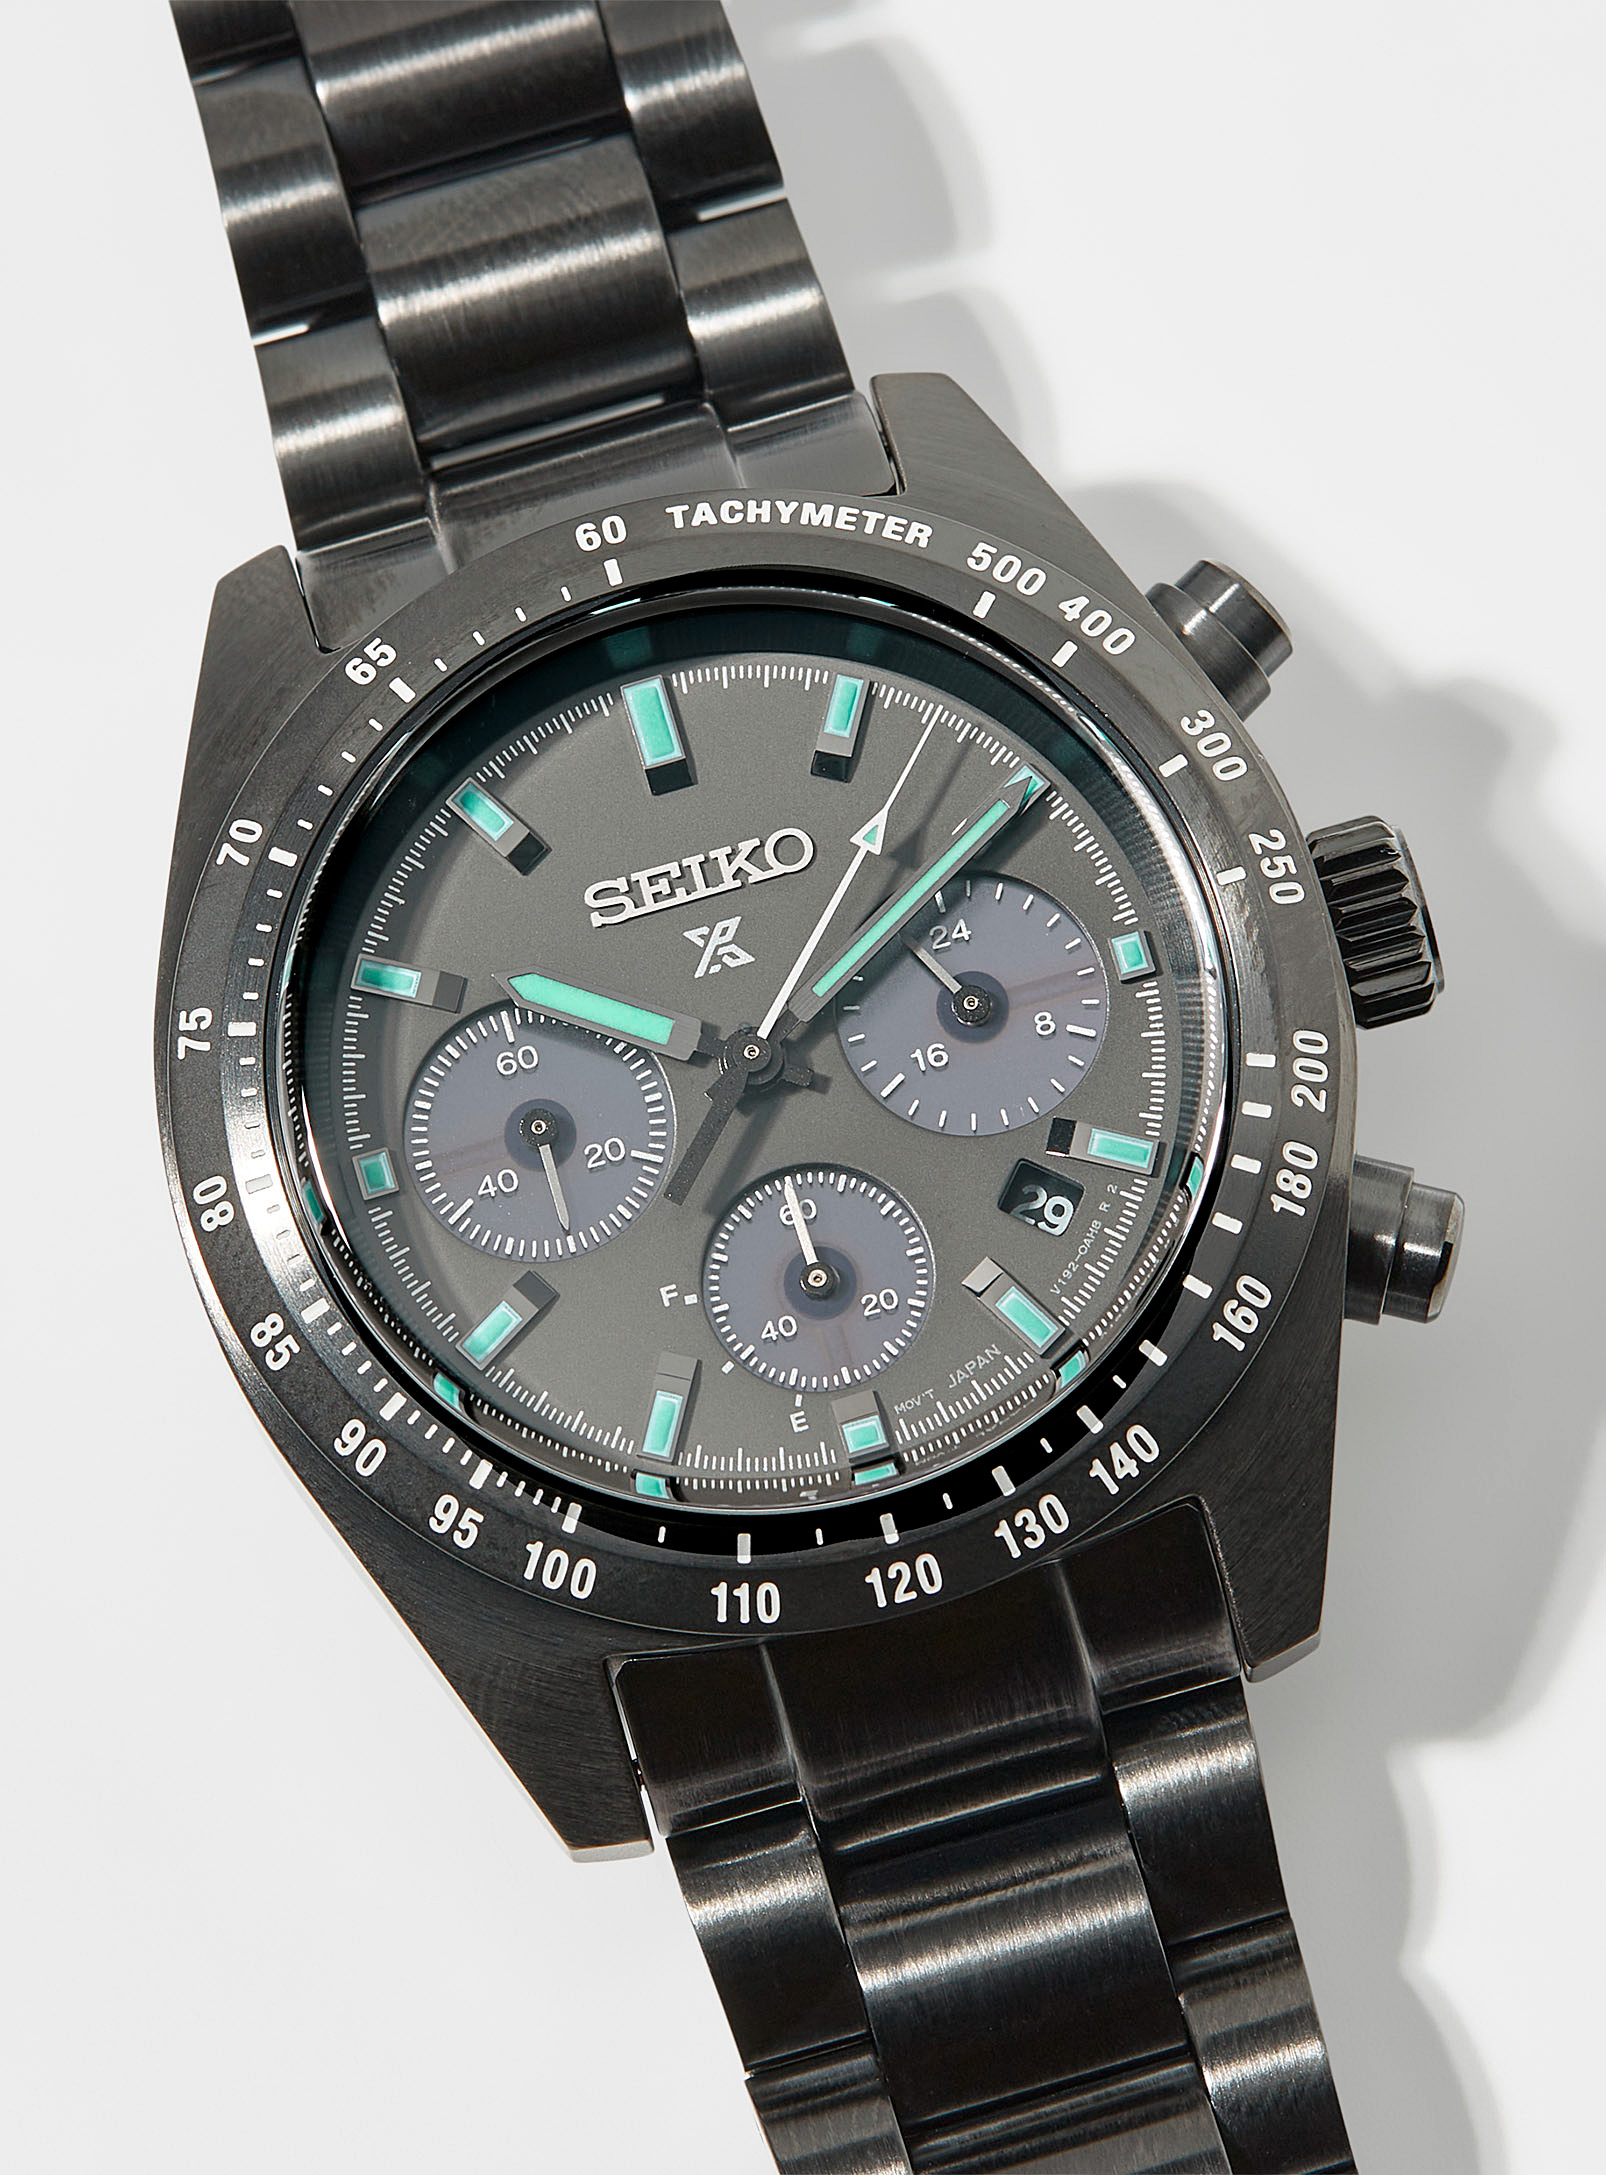 Seiko - Men's Prospex chronograph watch